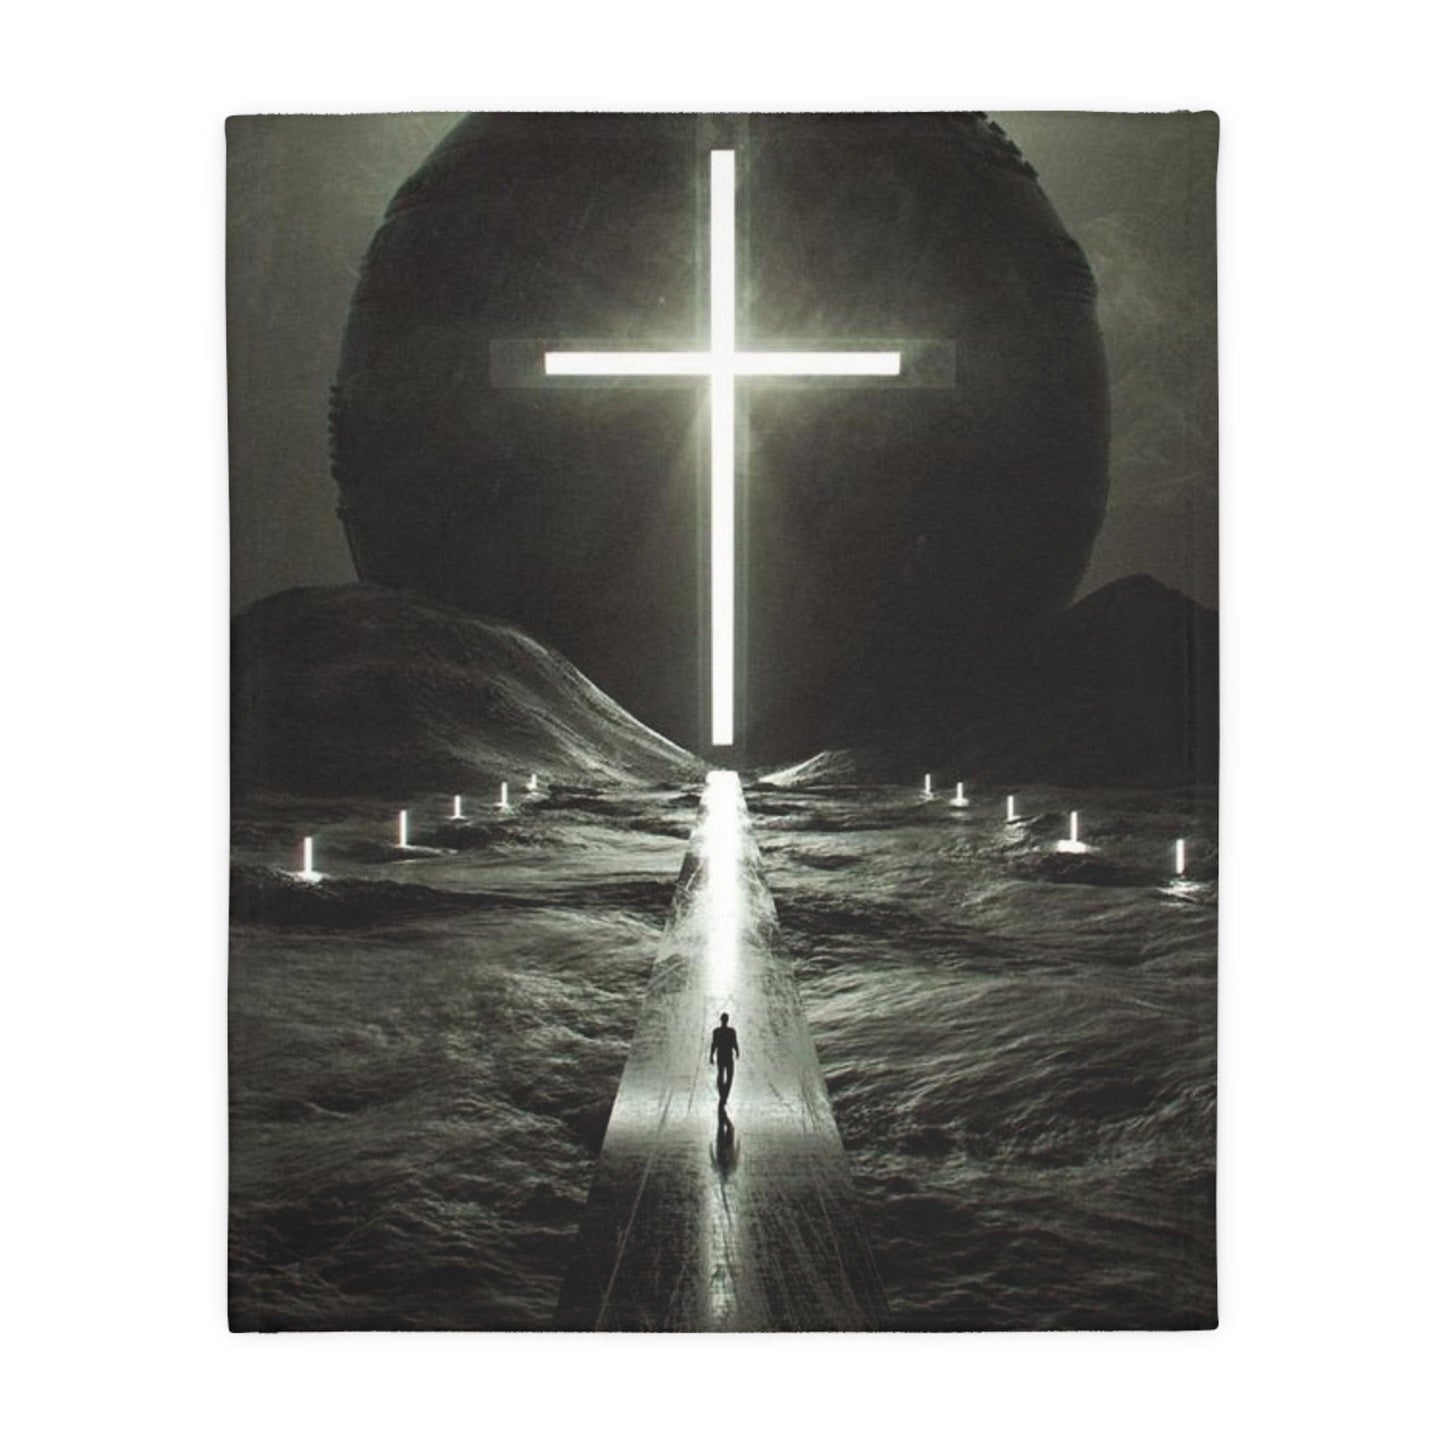 Glowing Christian Cross Reversible Velveteen Minky Blanket